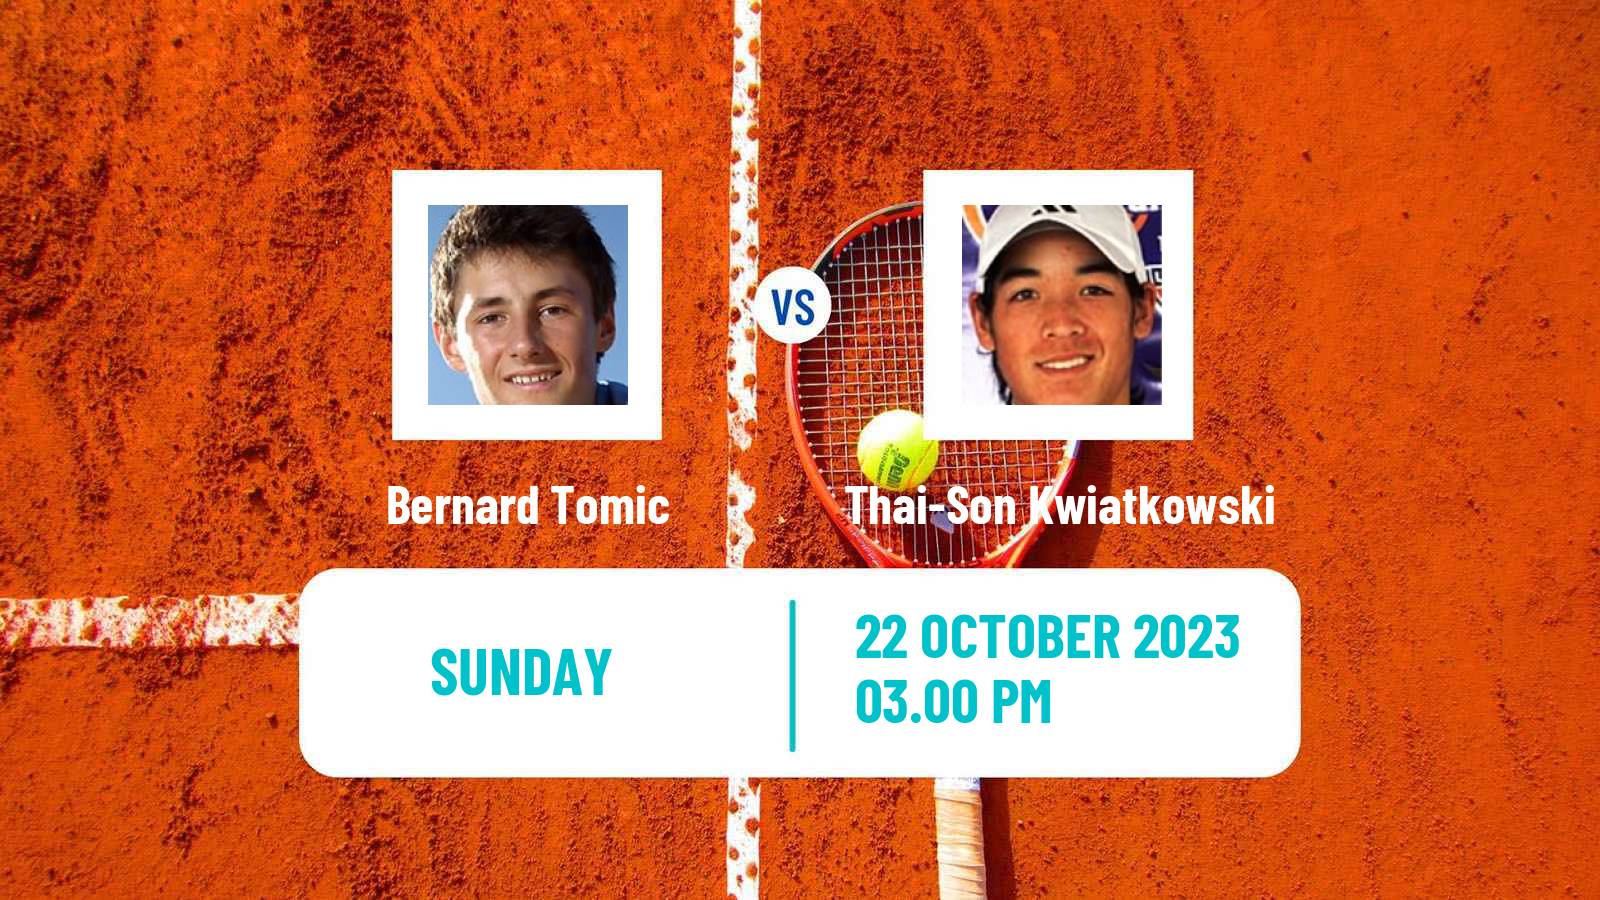 Tennis ITF M15 Las Vegas Nv Men Bernard Tomic - Thai-Son Kwiatkowski